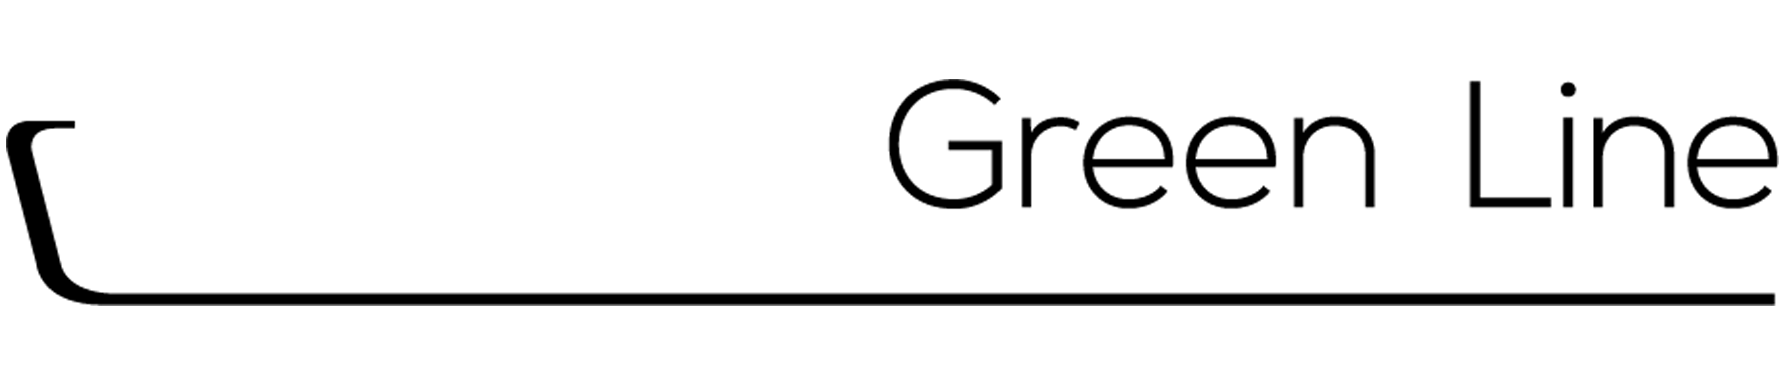 Dosatron Green Line-logo